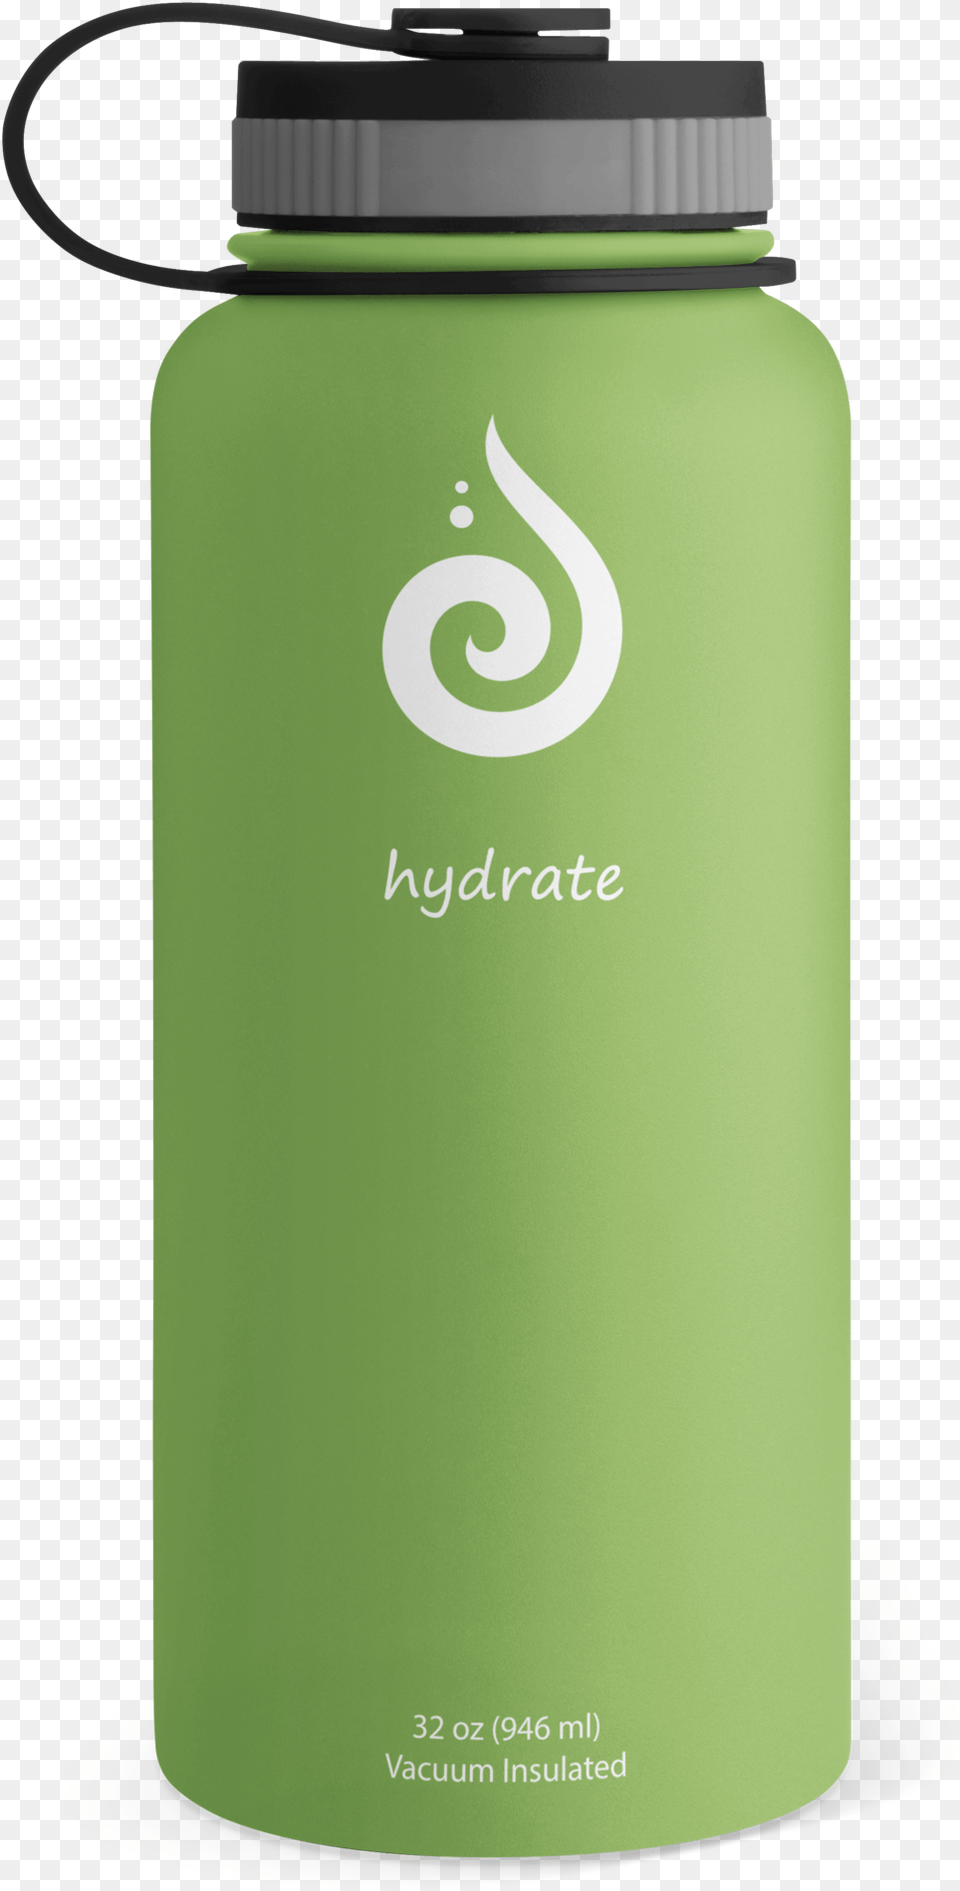 Hydrate 32oz Water Bottle Kiwi U2014 Hydrate Water Bottles Glass Bottle, Water Bottle, Shaker Png Image